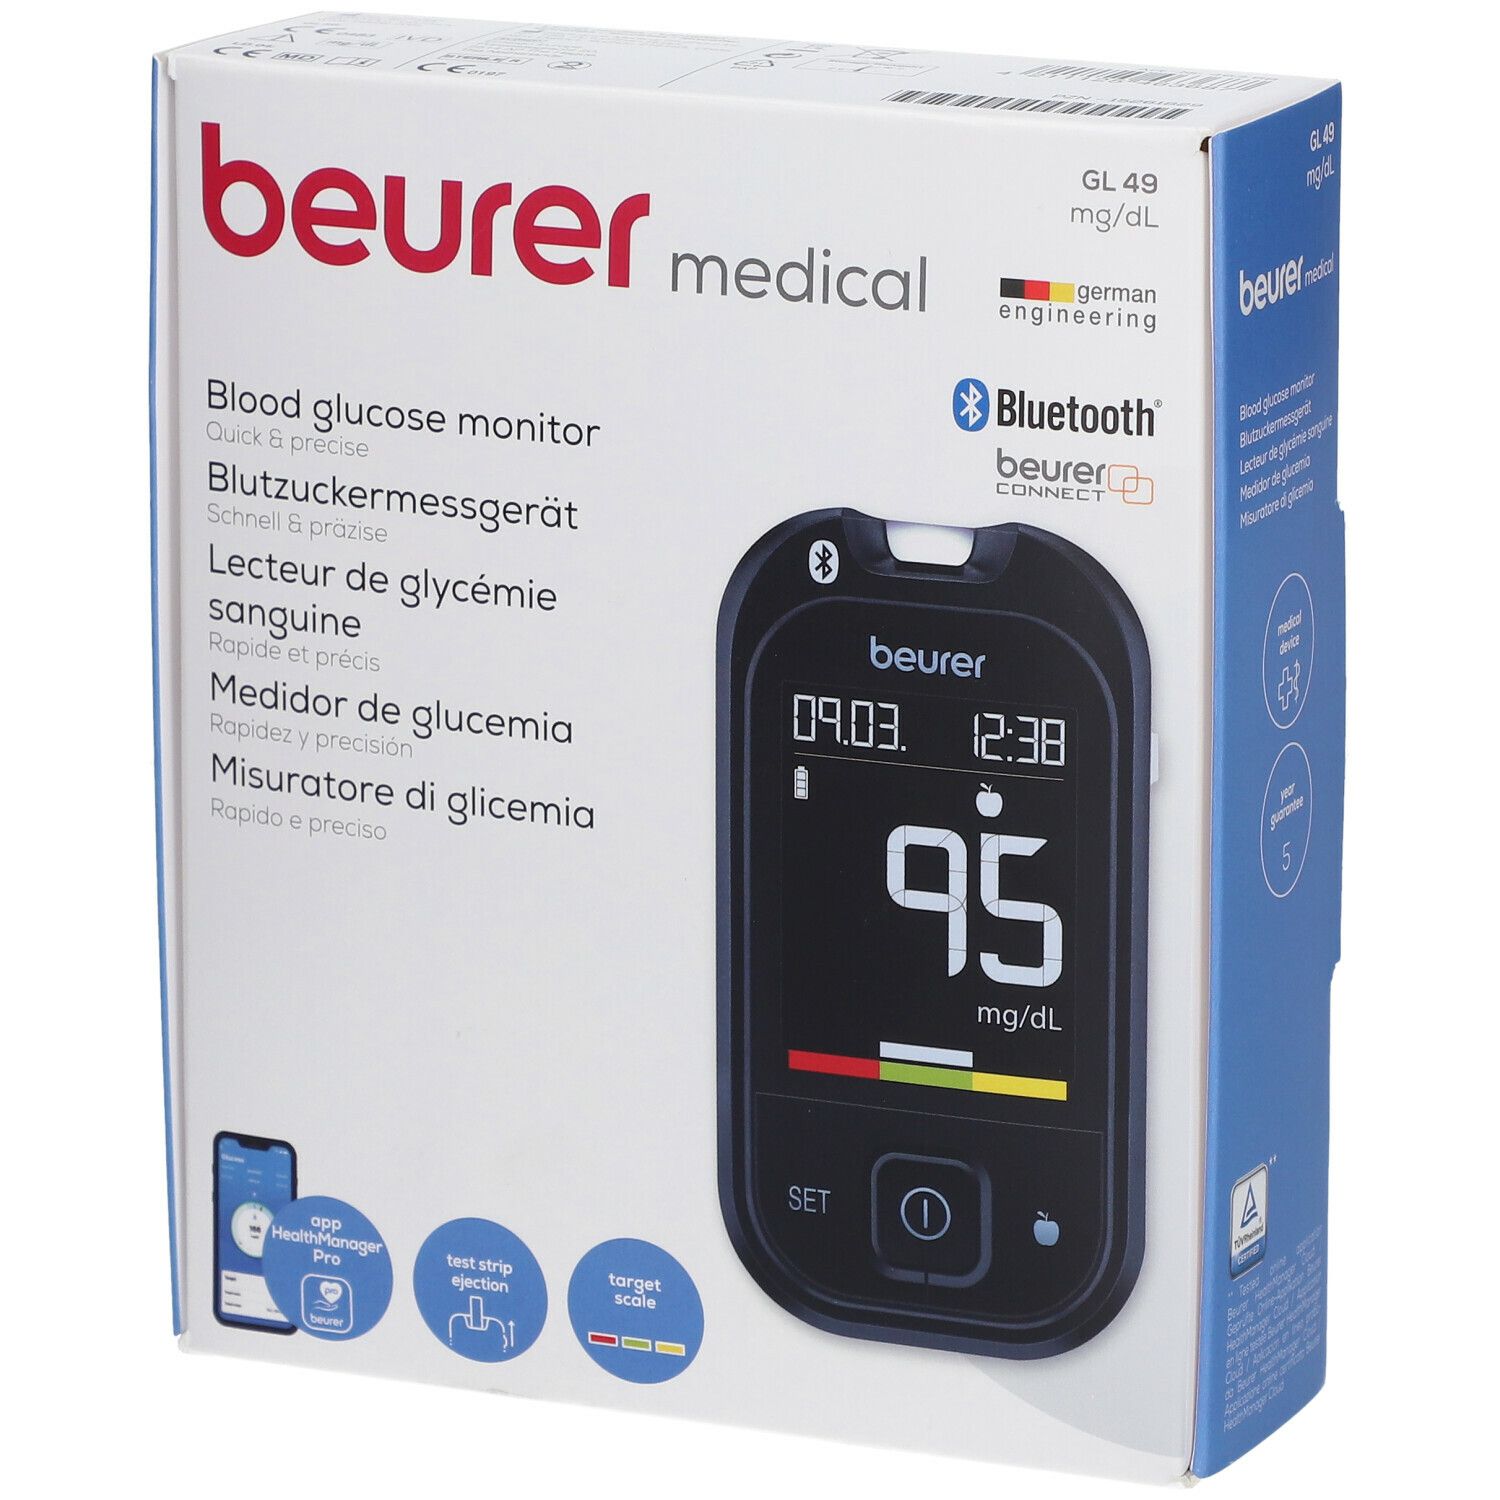 Beurer blood sugar measuring device GL 49 mmol/l